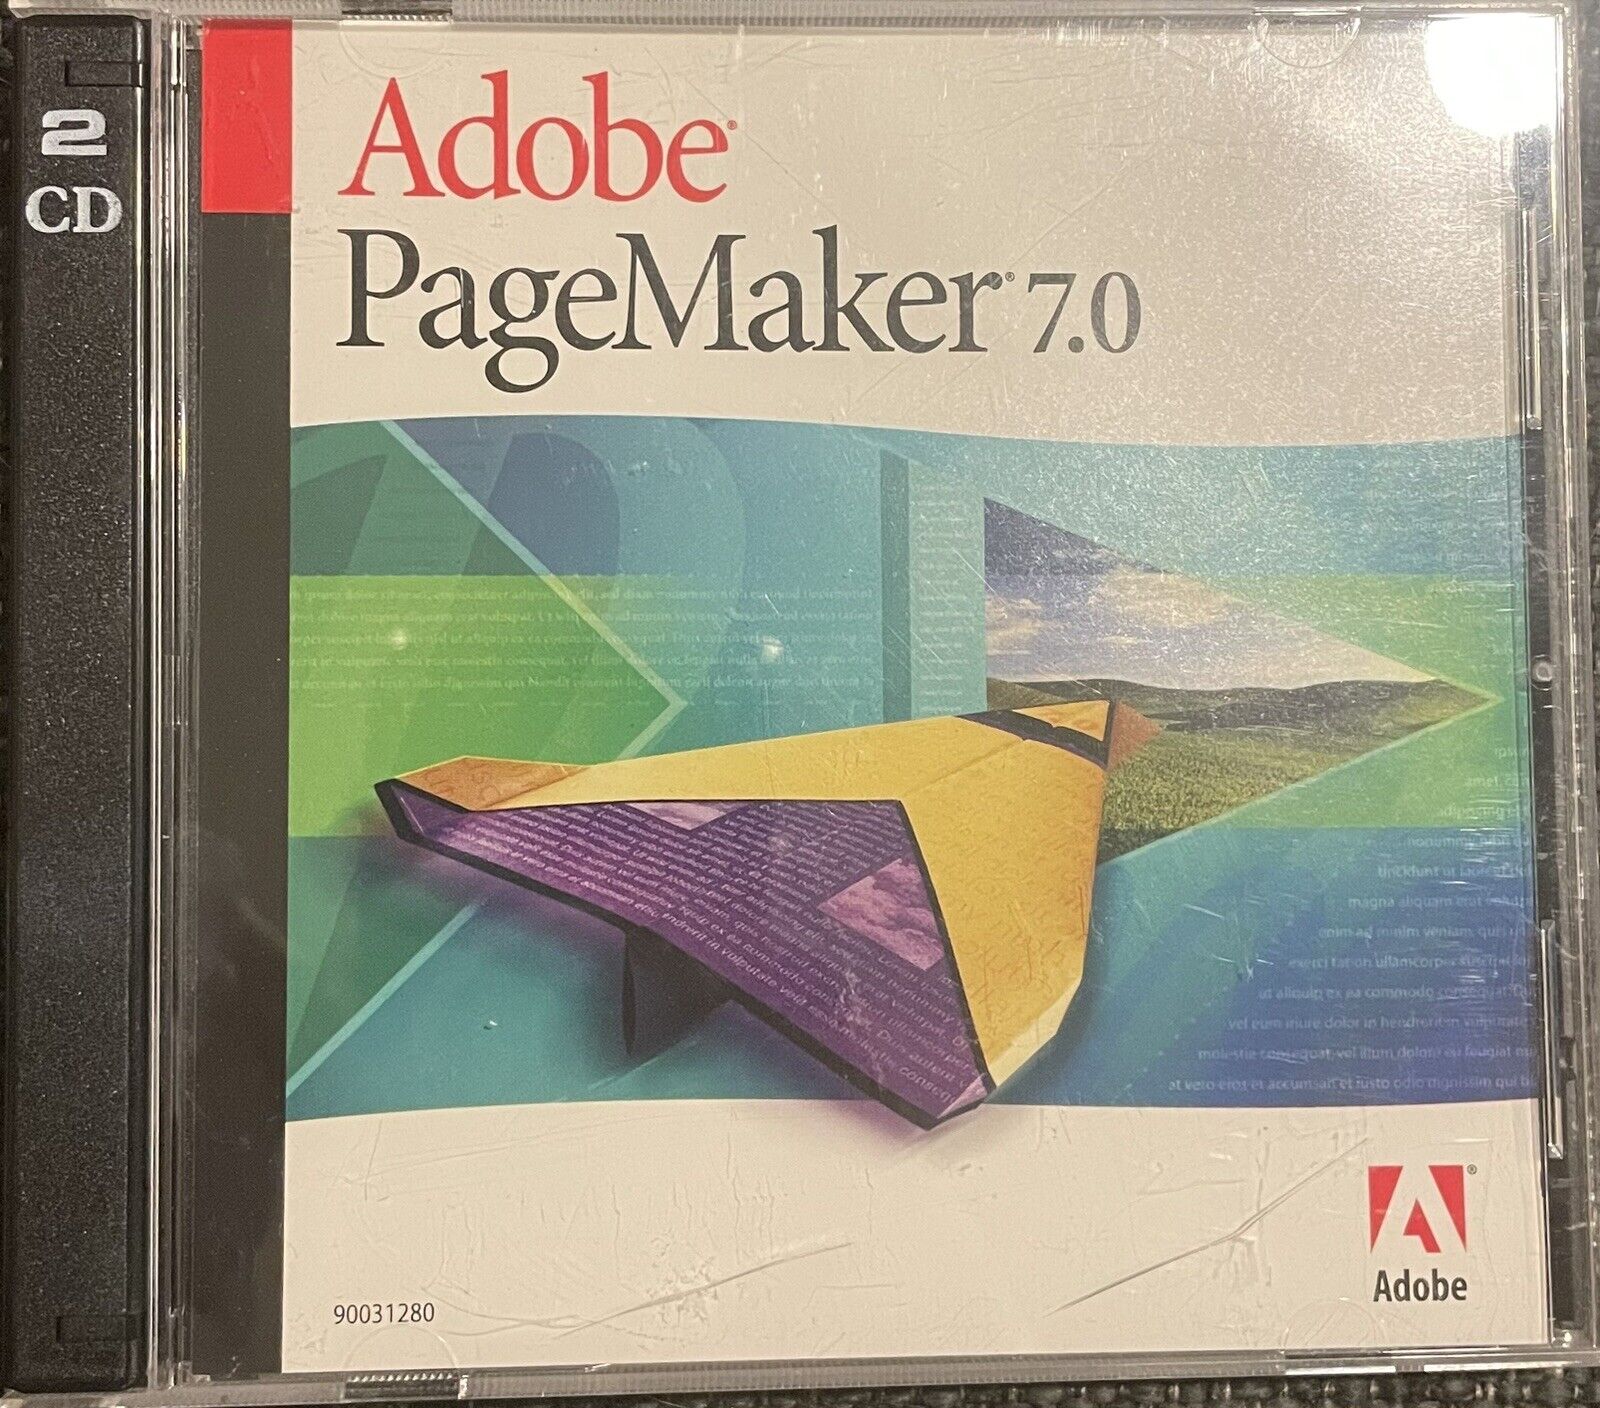 Adobe pagemaker 7.0 Full Retail Version 2 CD